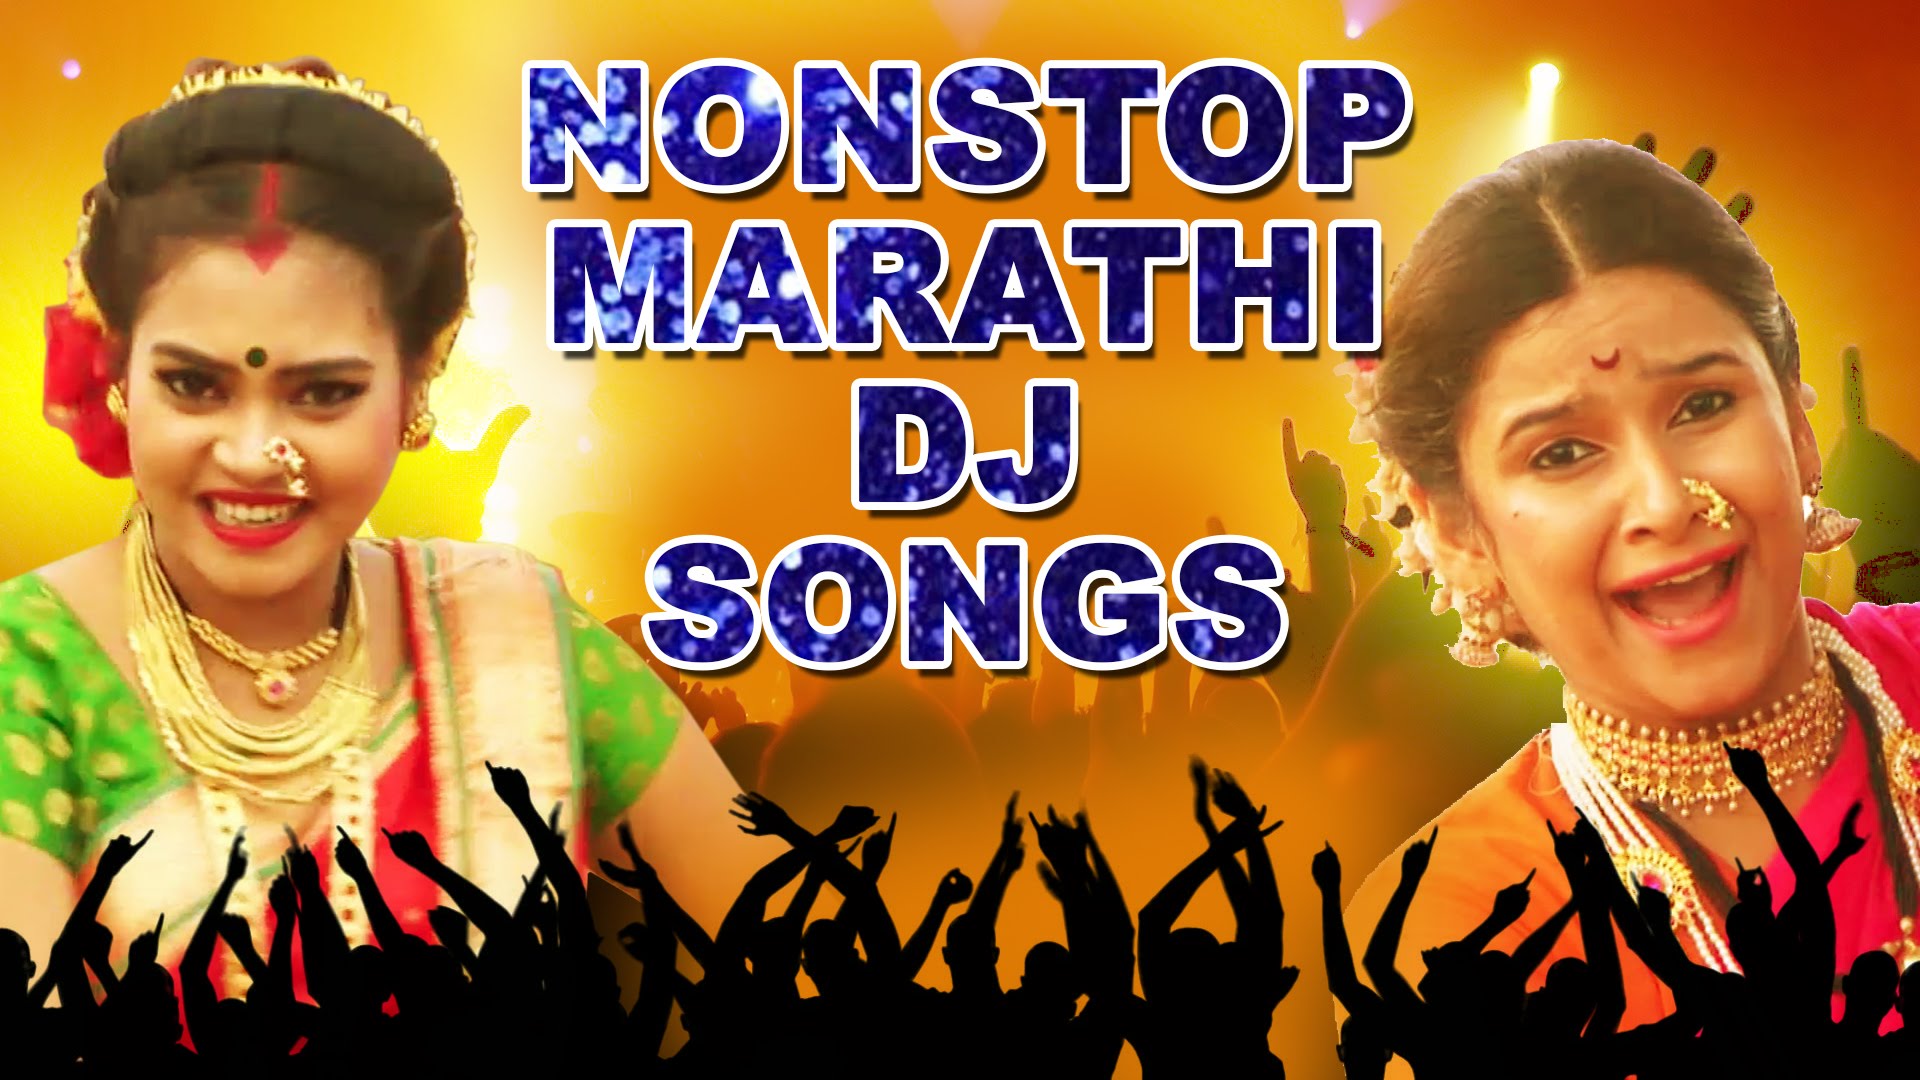 Marathi devotional songs mp3 download